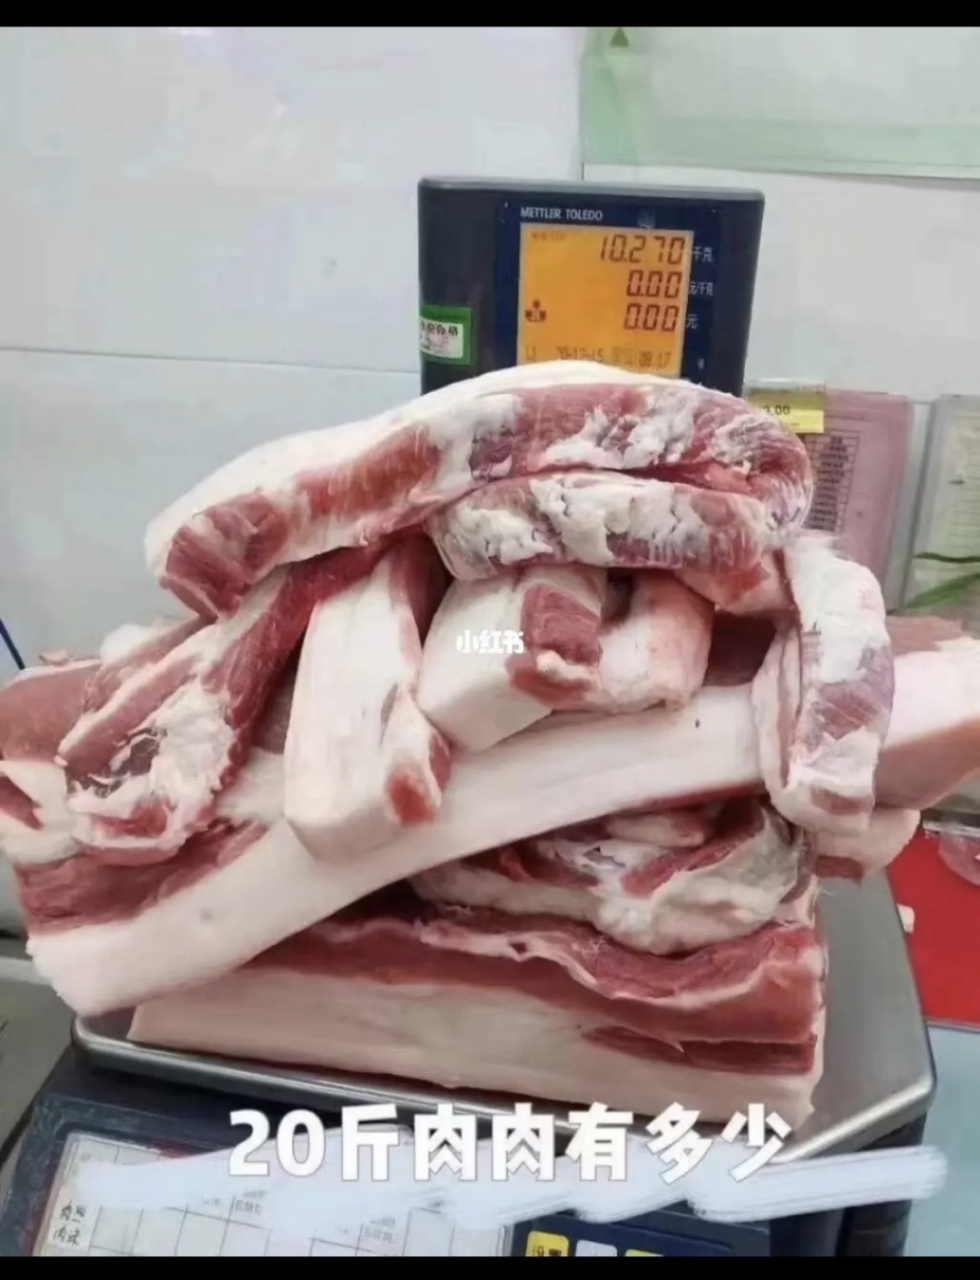 八斤猪肉多大一块求图图片